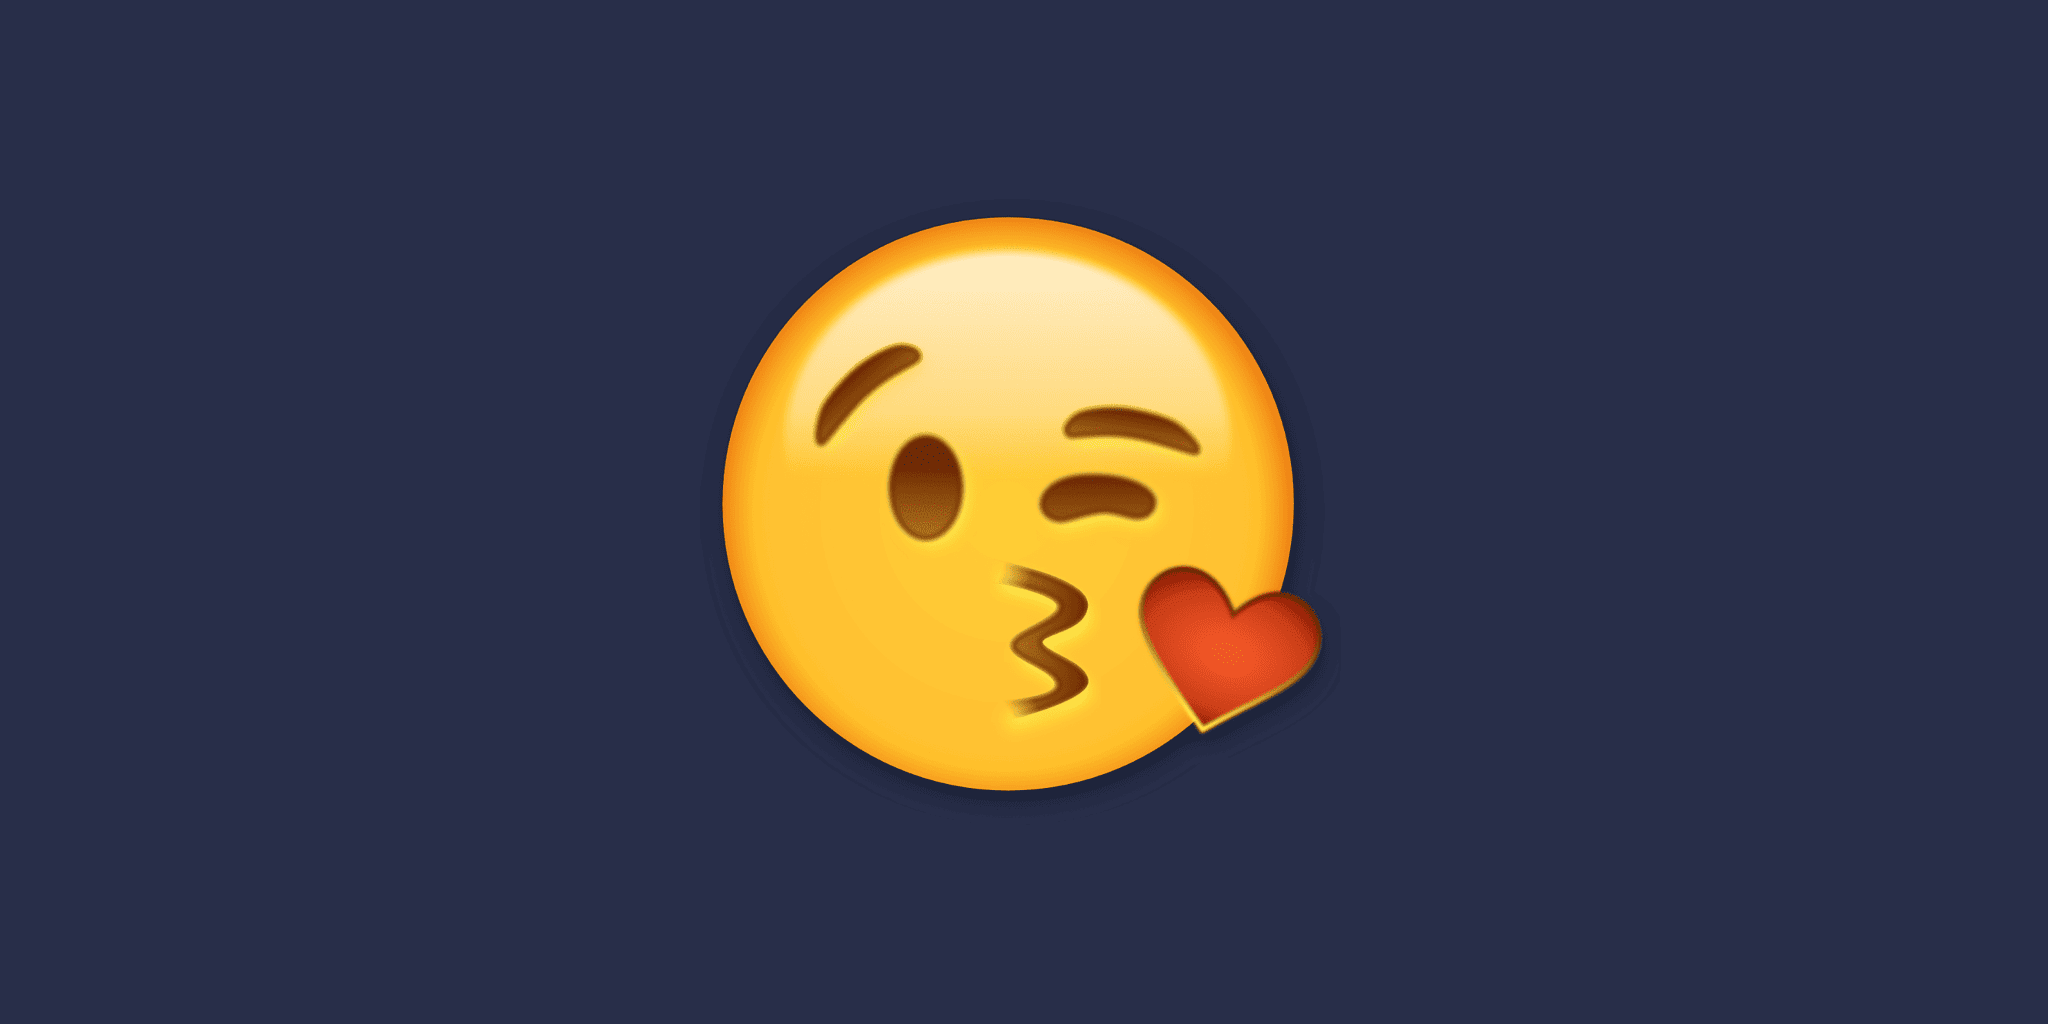 kiss face emoji